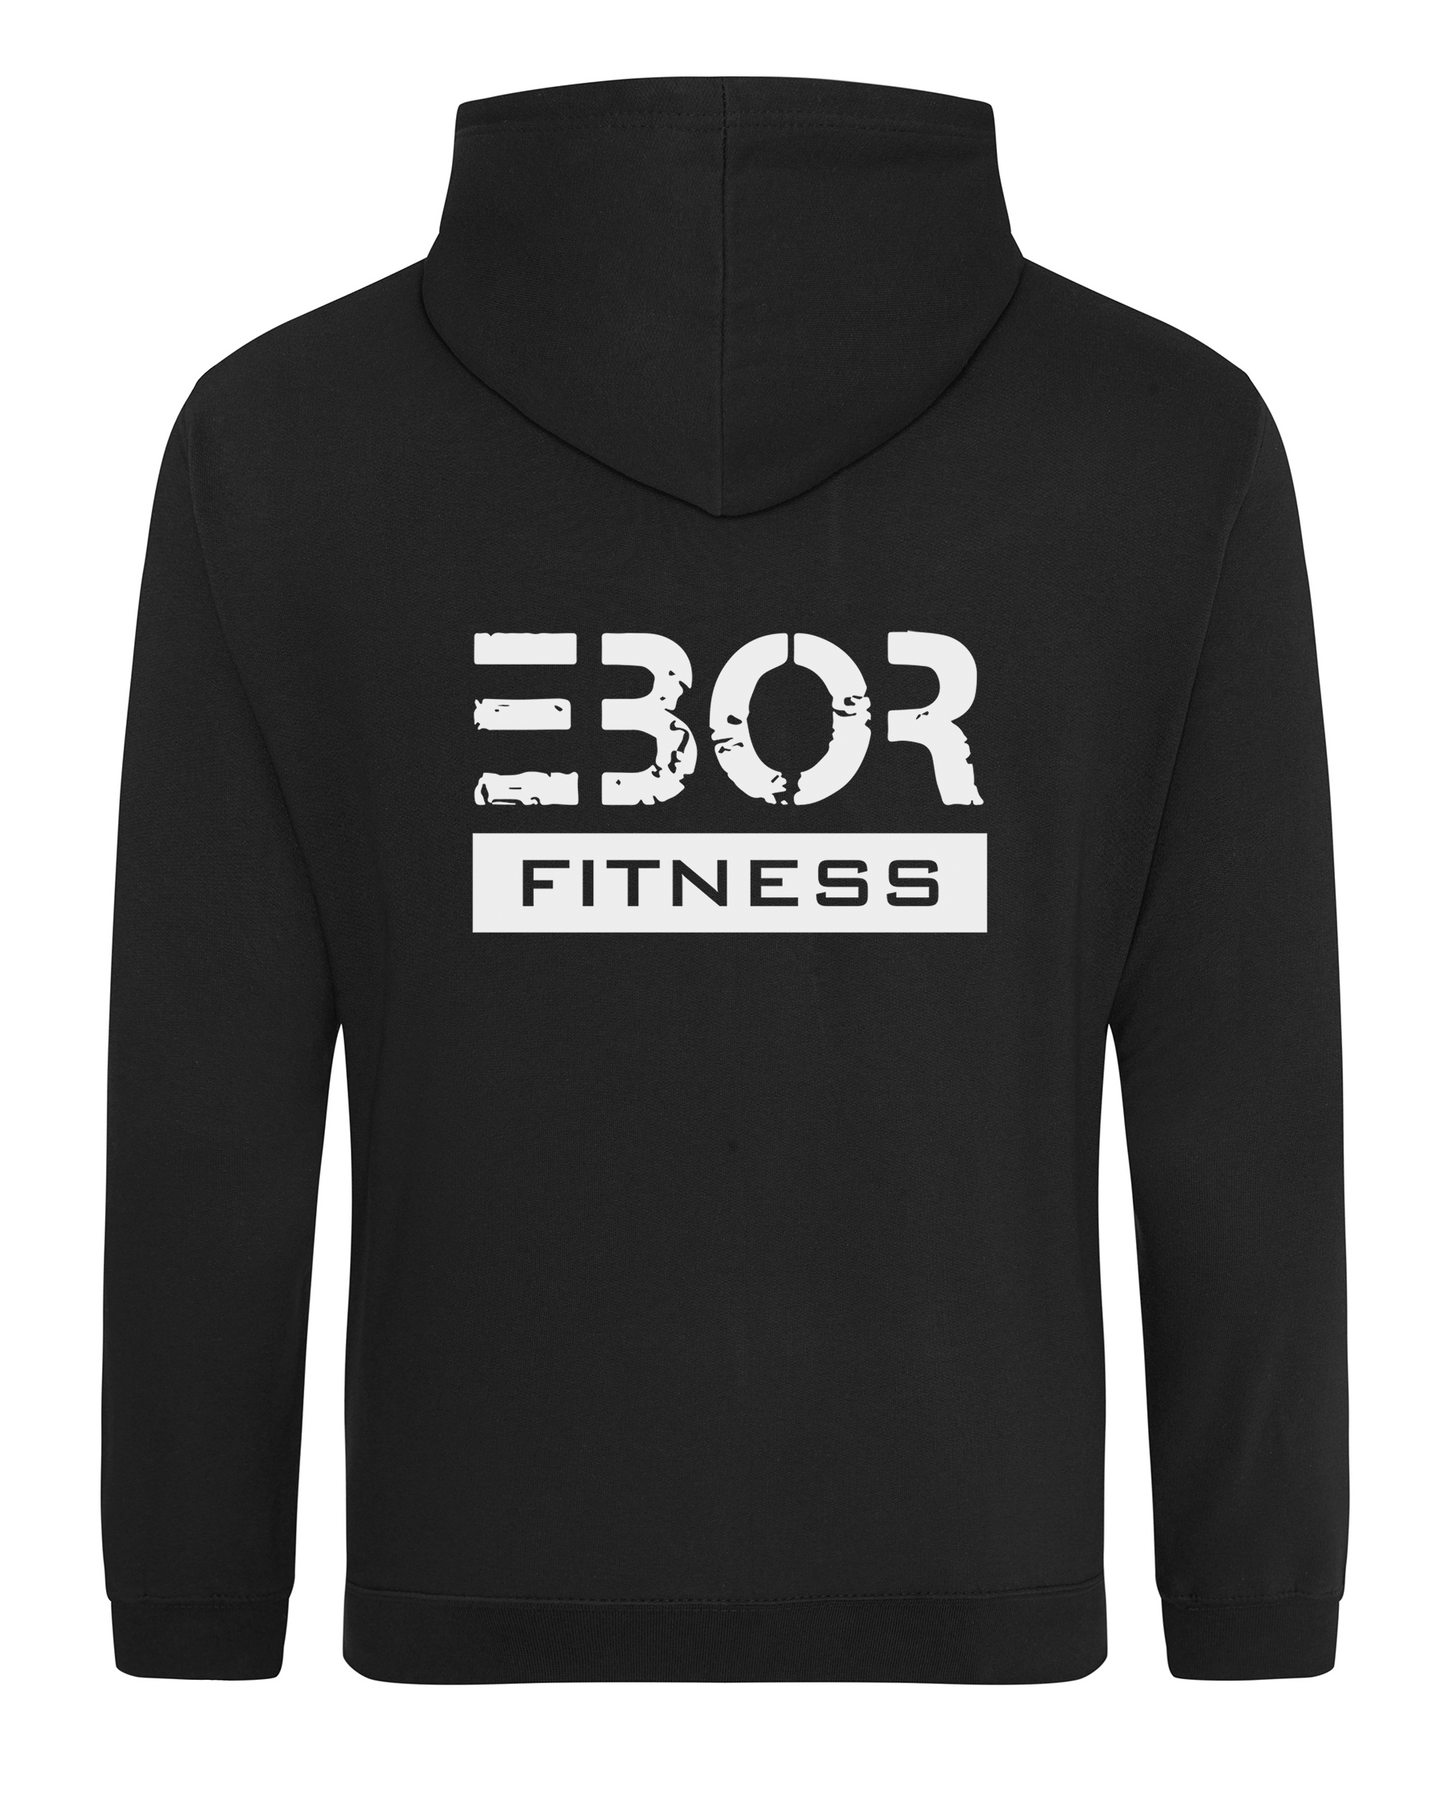 Ebor Fitness Hoodie